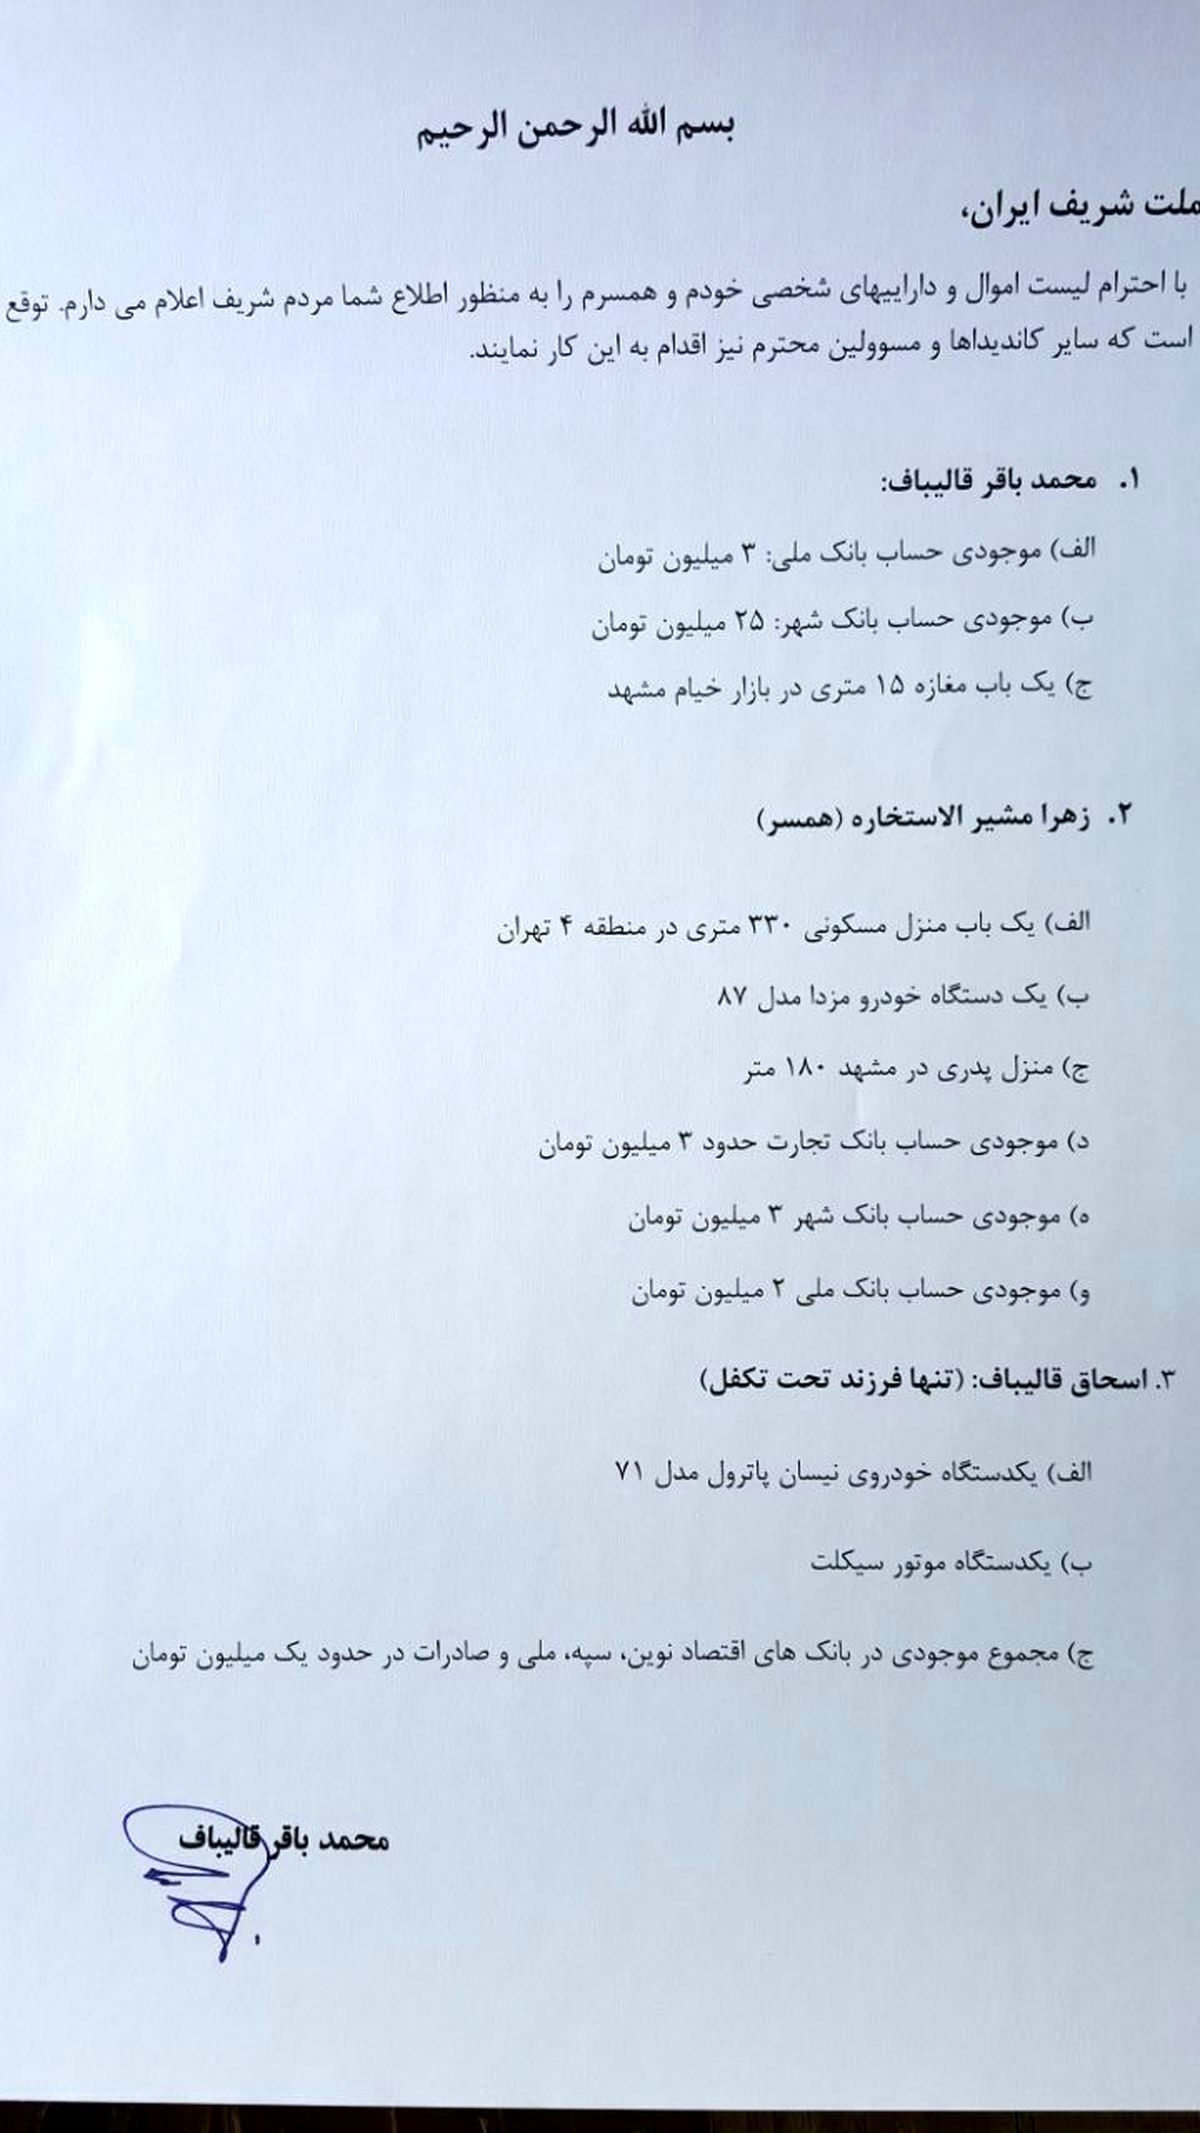 فهرست اموال قالیباف که در انتخابات ۹۶ منتشر کرد + عکس